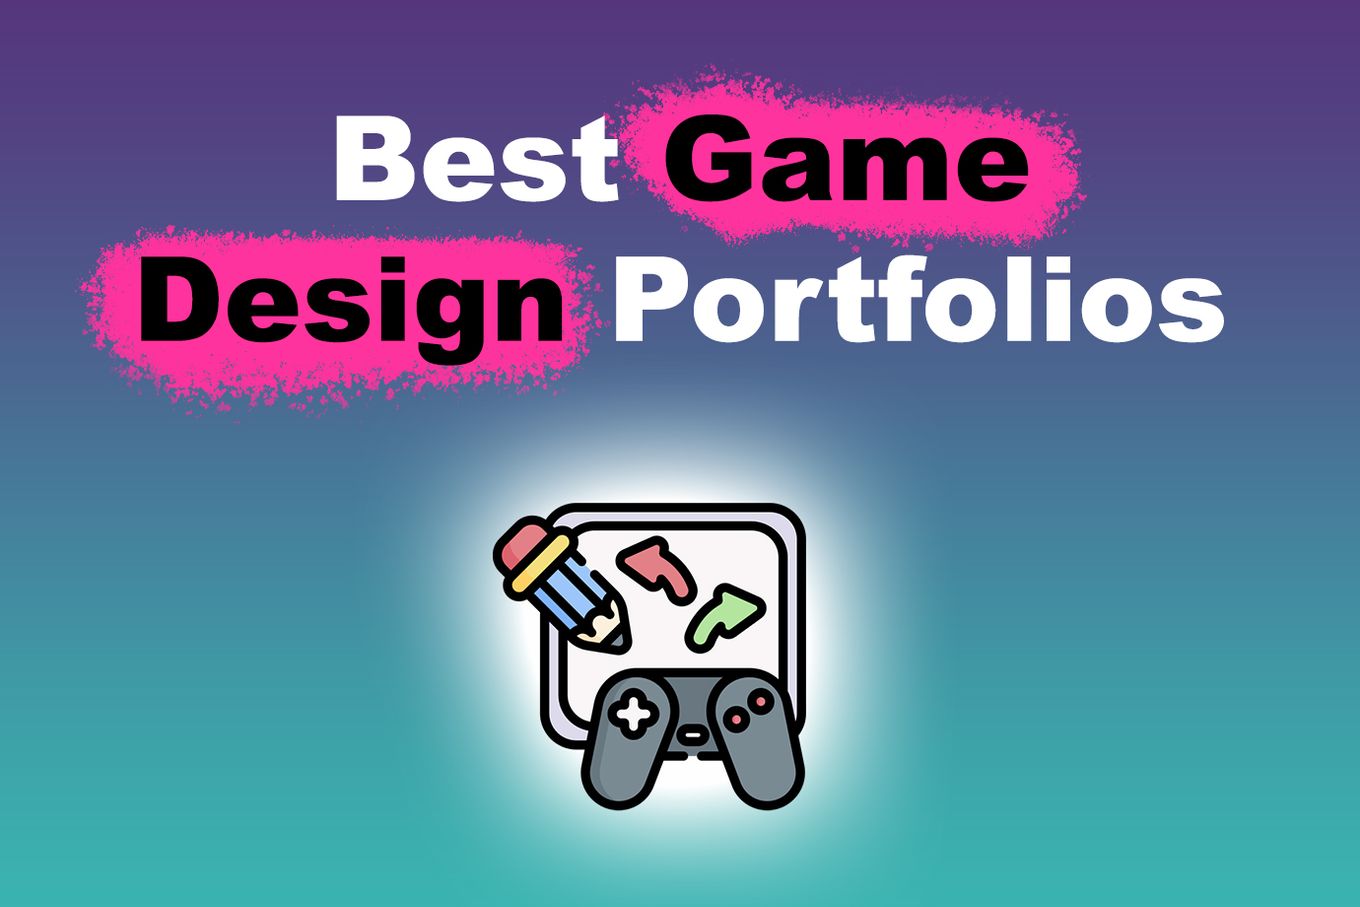 Best Game Design Portfolios